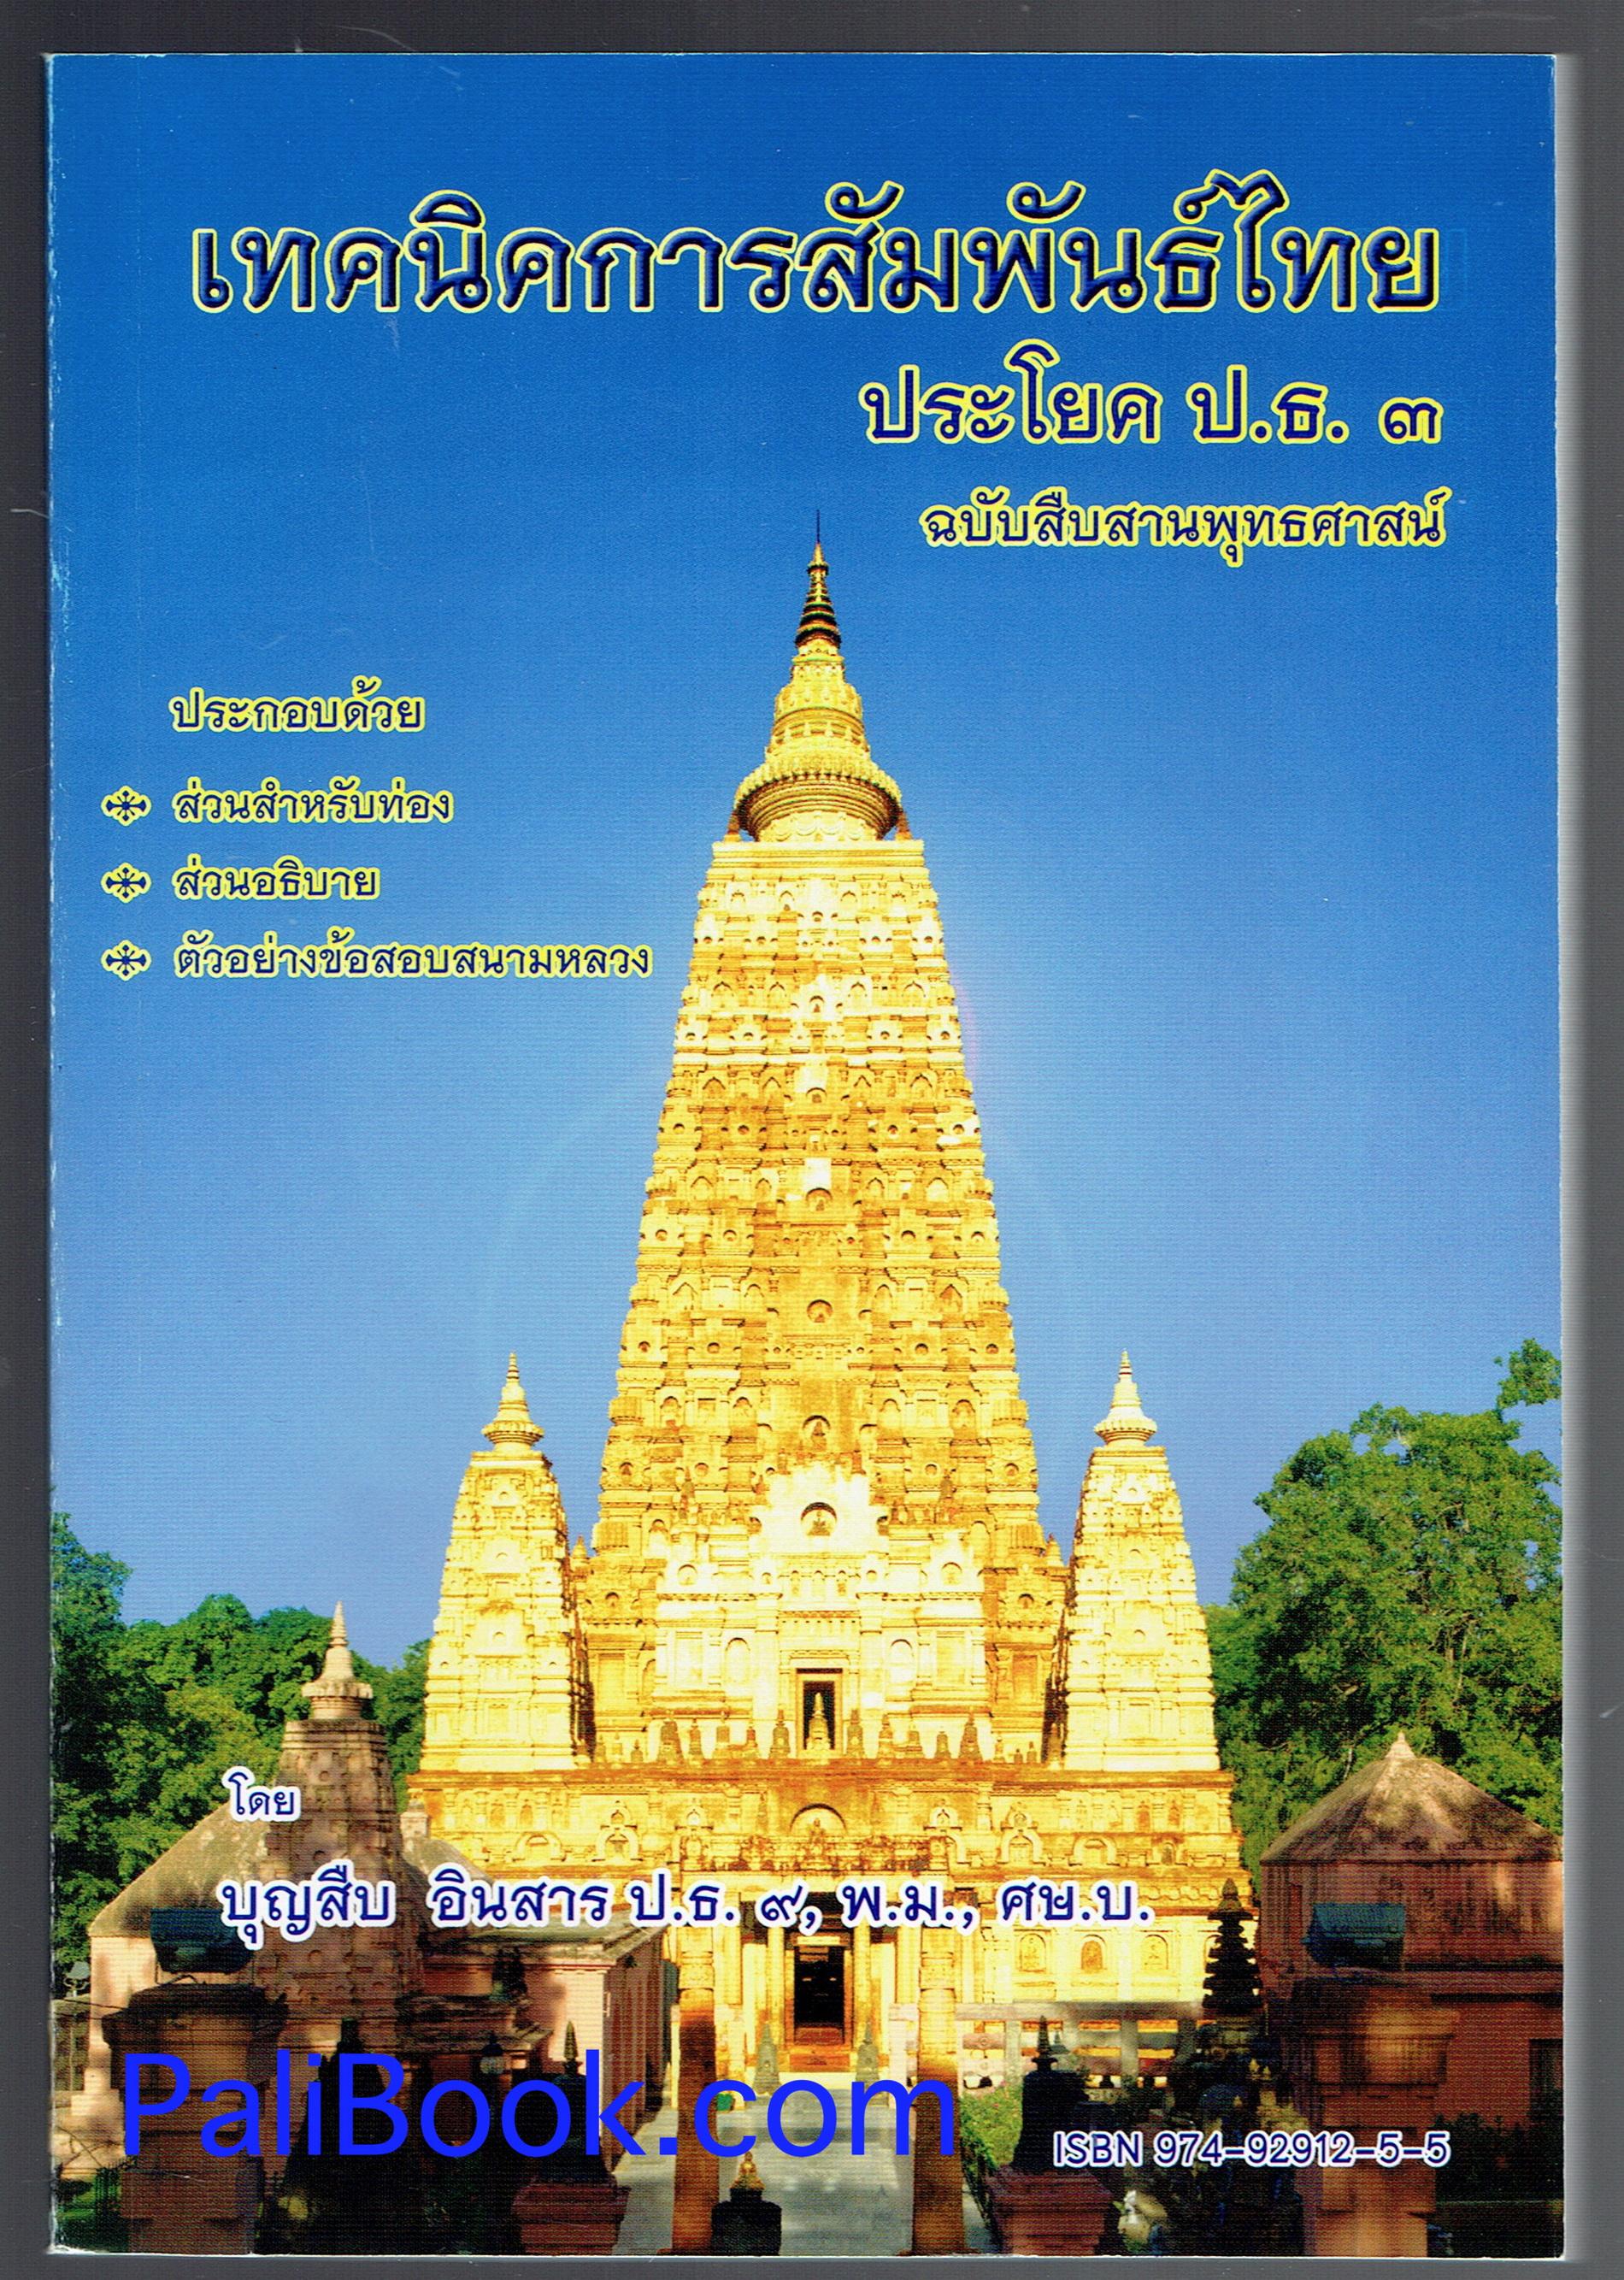 เทคนิคการสัมพันธ์ไทย ประโยค ป.ธ.3 - บุญสืบ อินสาร - หนังสือบาลี ร้านบาลีบุ๊ก Palibook